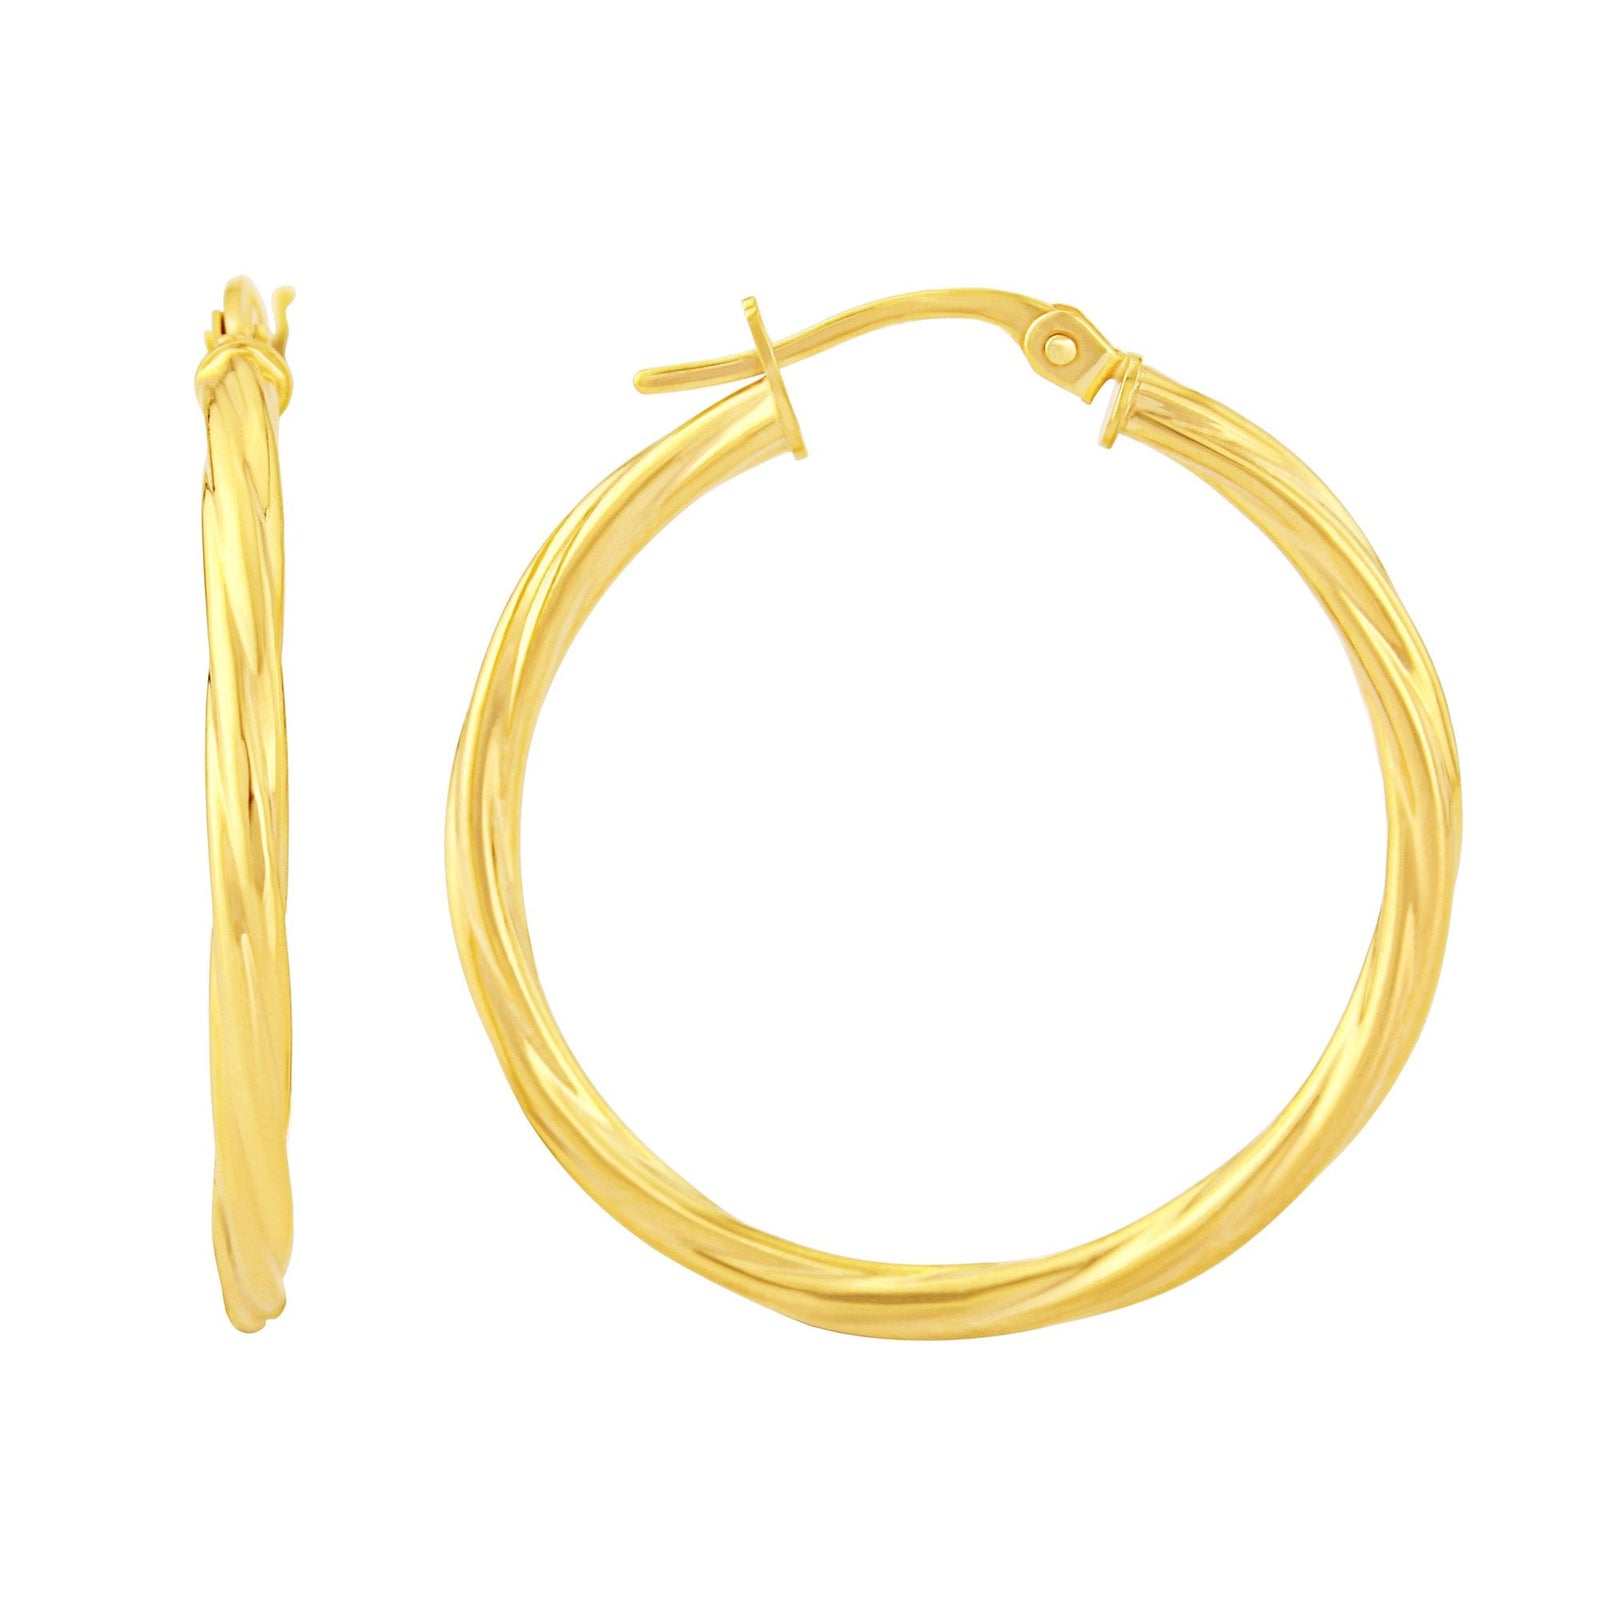 9ct gold 20mm twisted hoop earrings